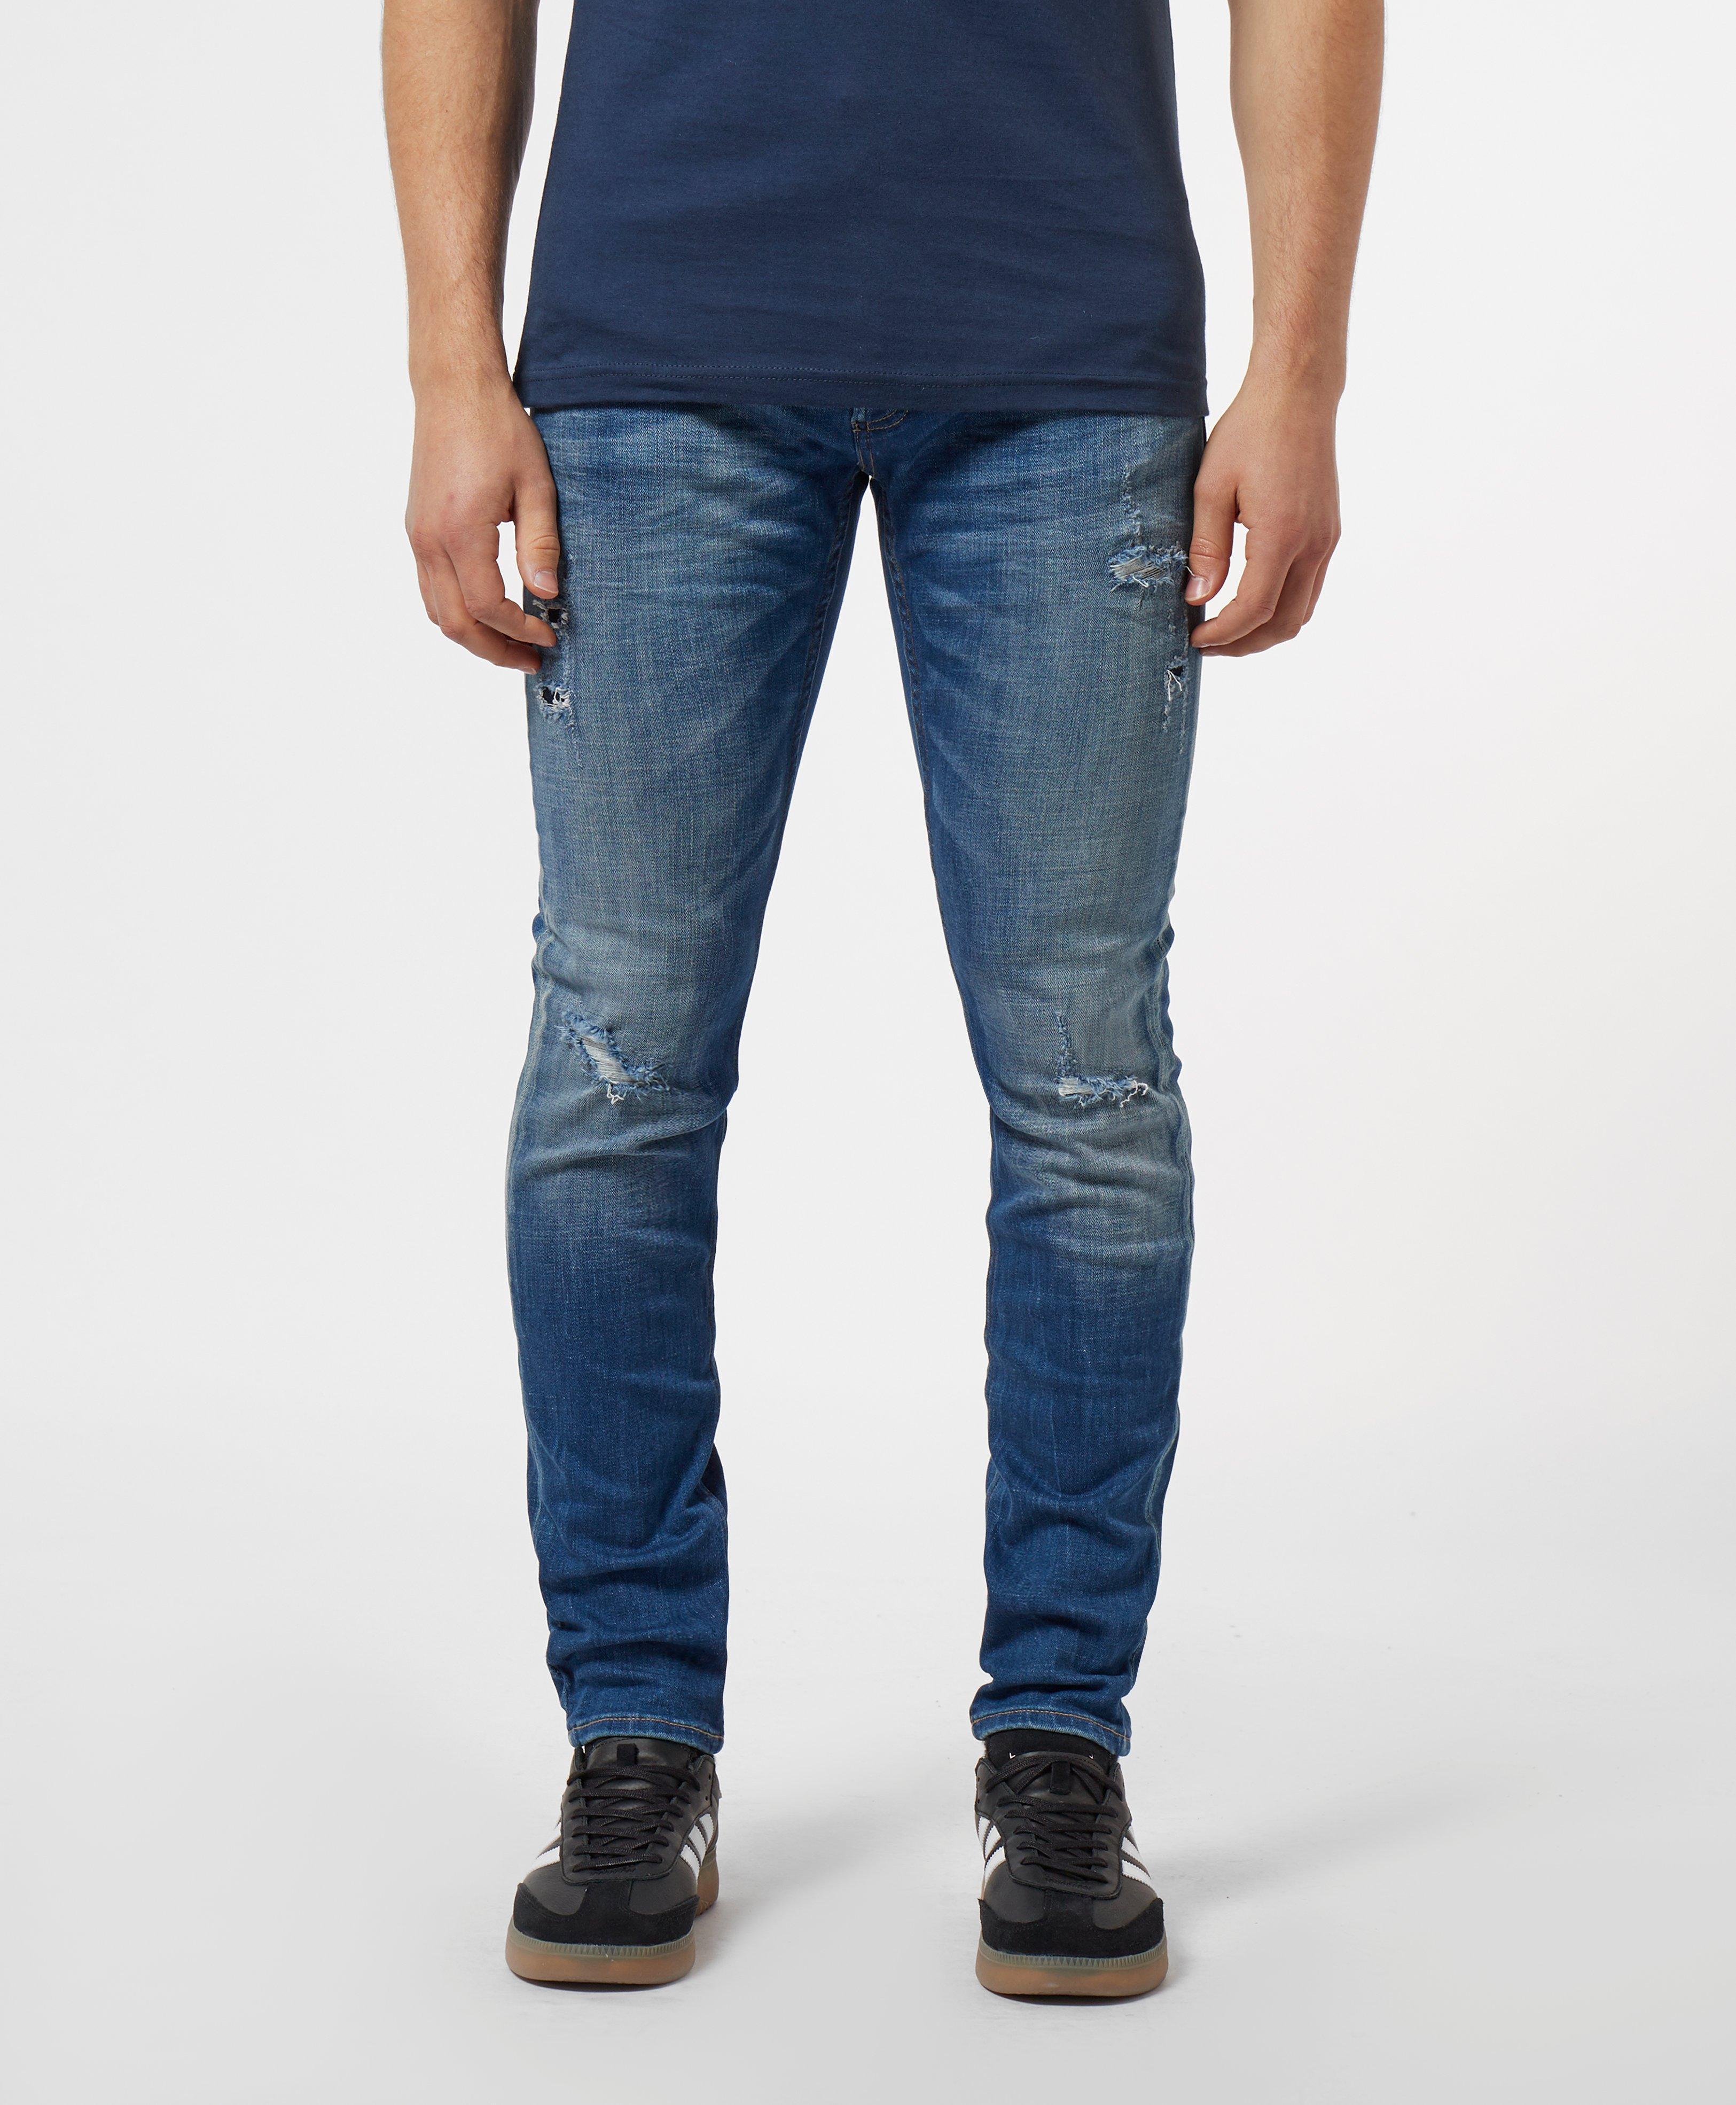 Denham Bolt Distressed Skinny Jeans in Blue for Men - Lyst